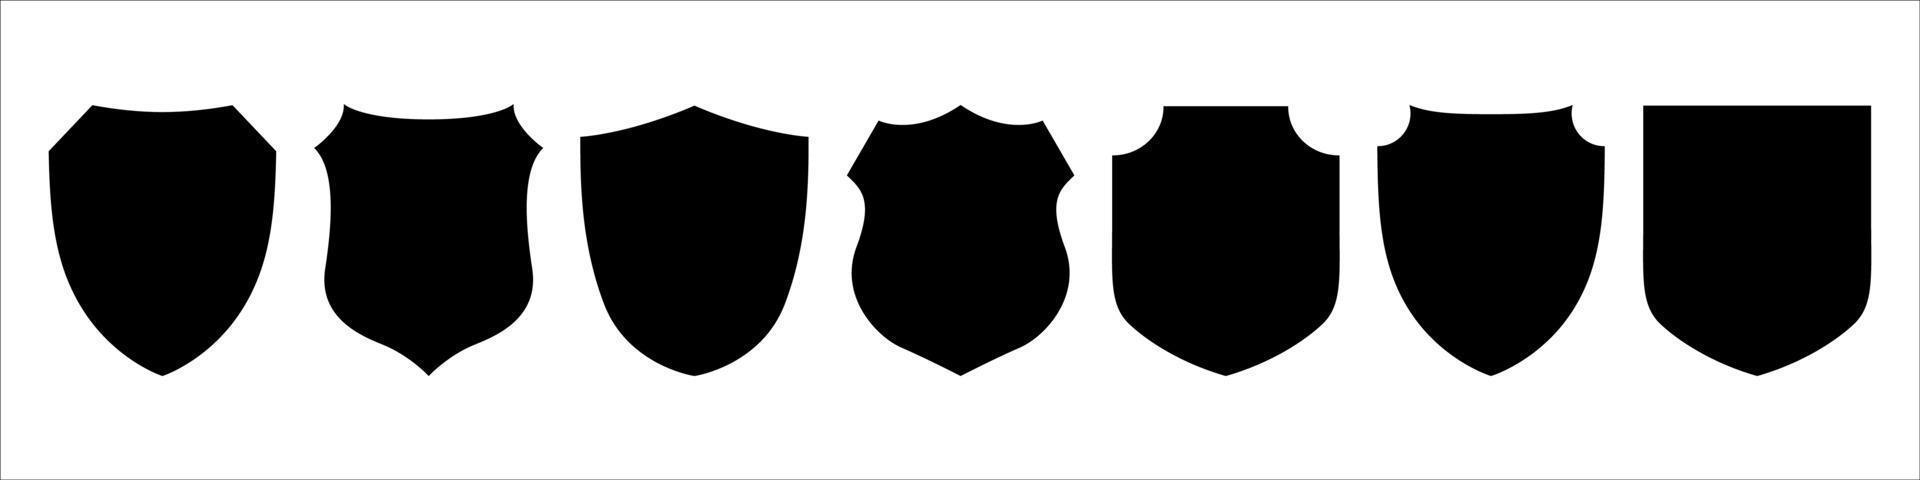 conjunto de ícones do escudo vetor